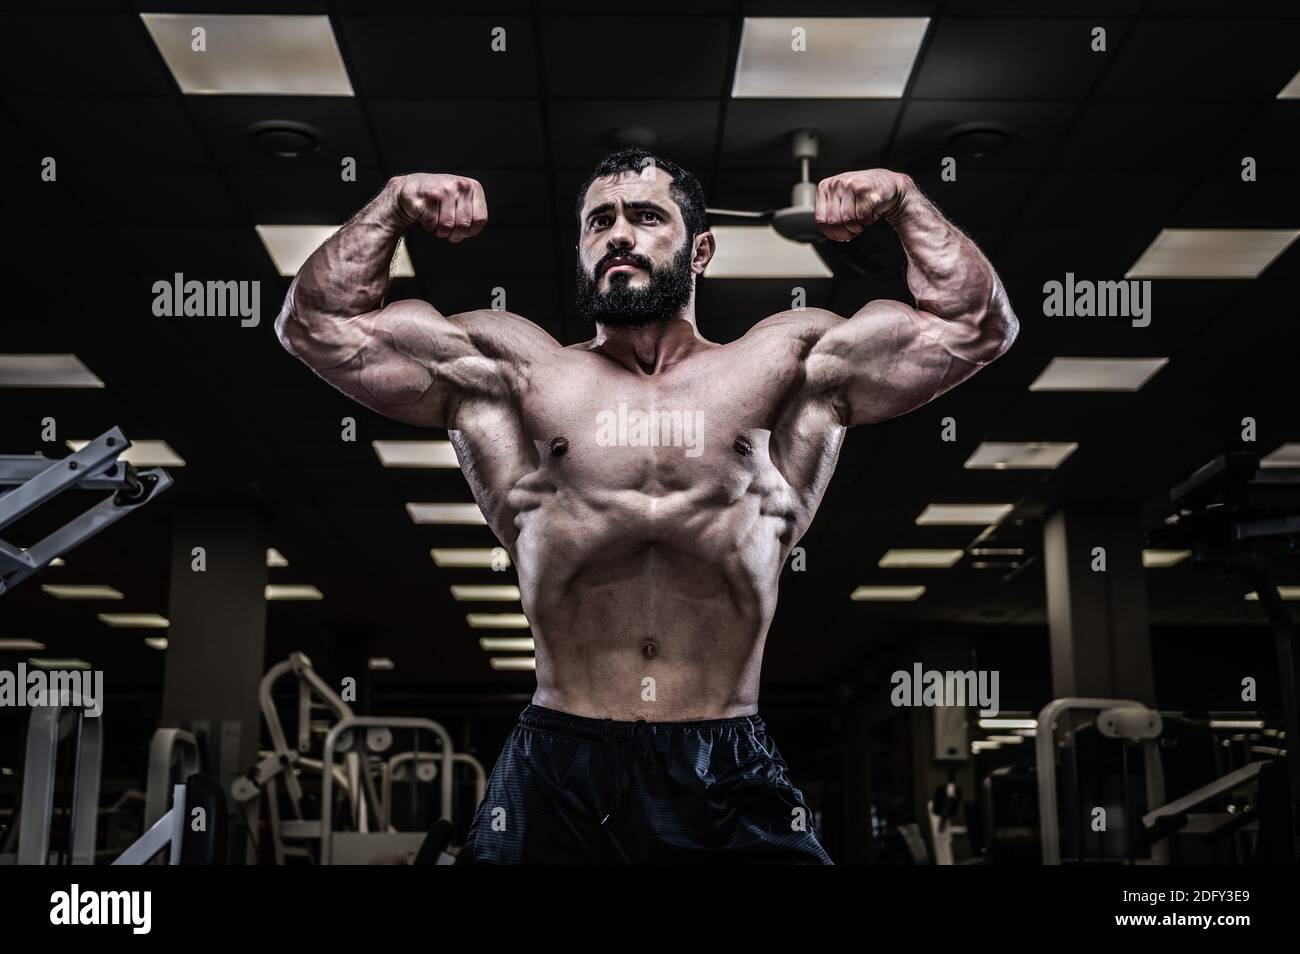 jeune homme caucasien fort avec une barbe montrant des bras biceps puissants muscle posé dans la salle de fitness sombre Banque D'Images